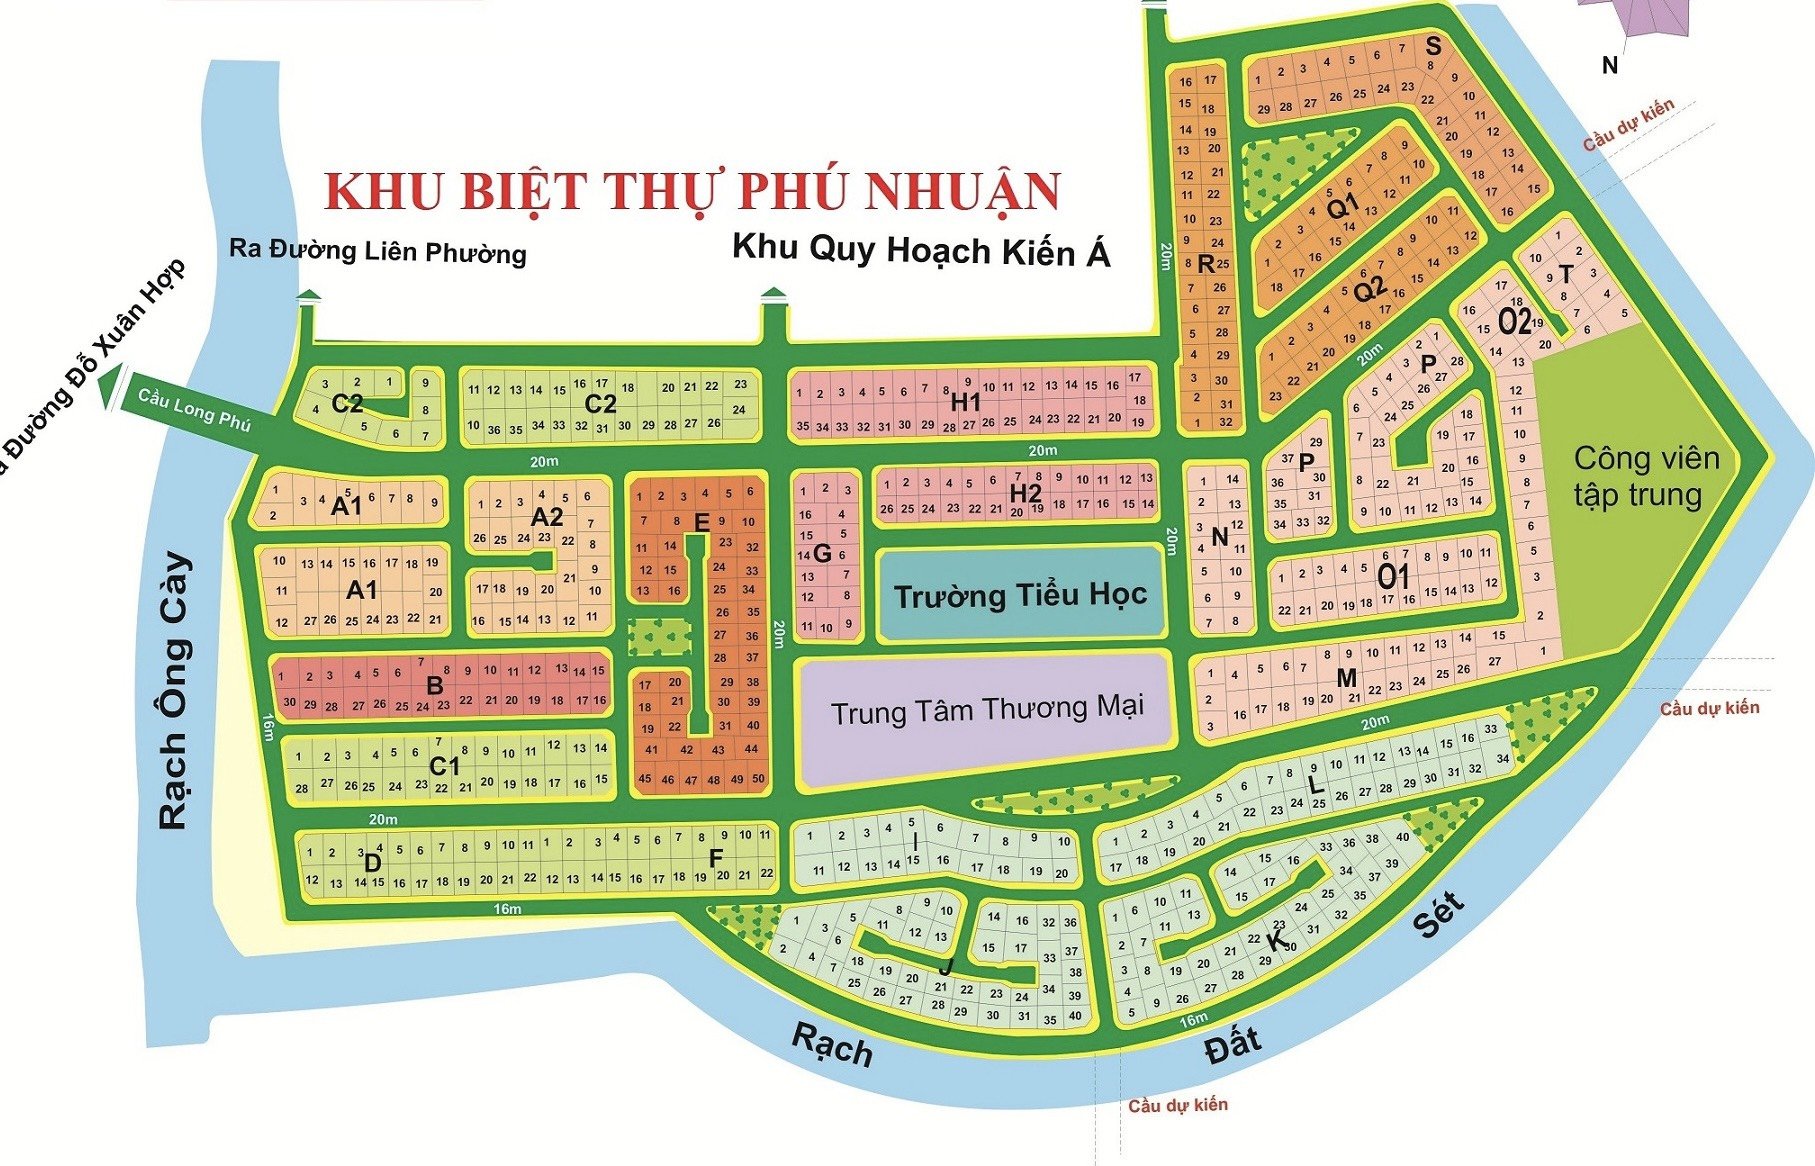 Bán 1 số nền đất giá cực tốt KDC Phú Nhuận đối diện The Global City Quận 2 - LH:0949114488